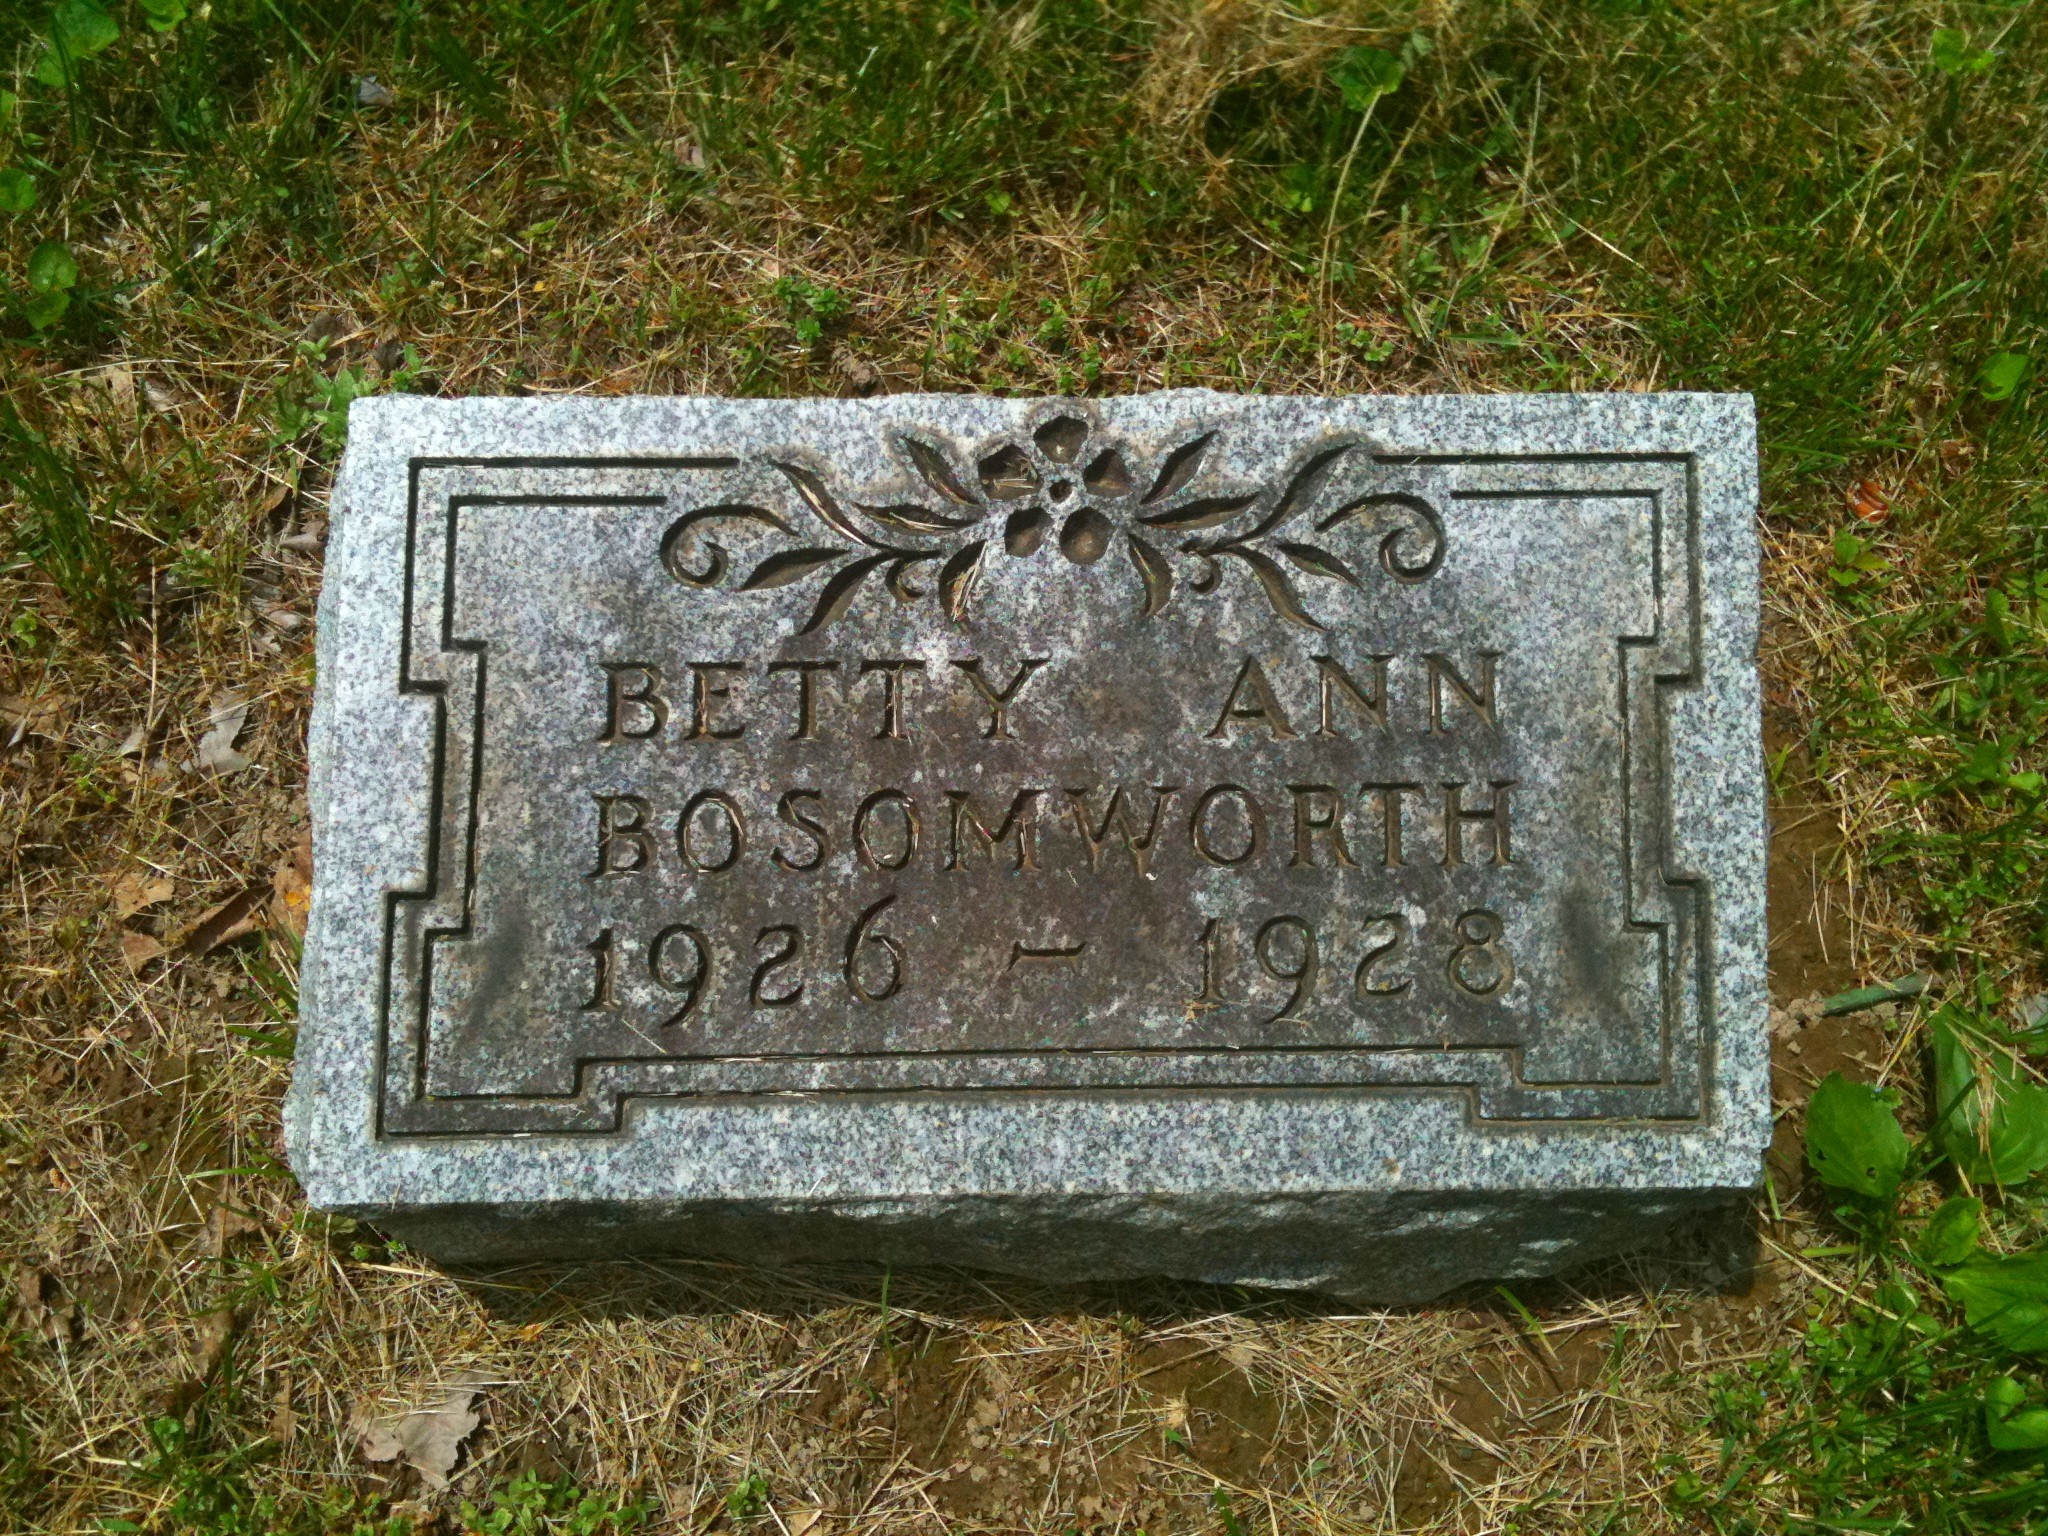 Betty Ann Bosomworth Headstone